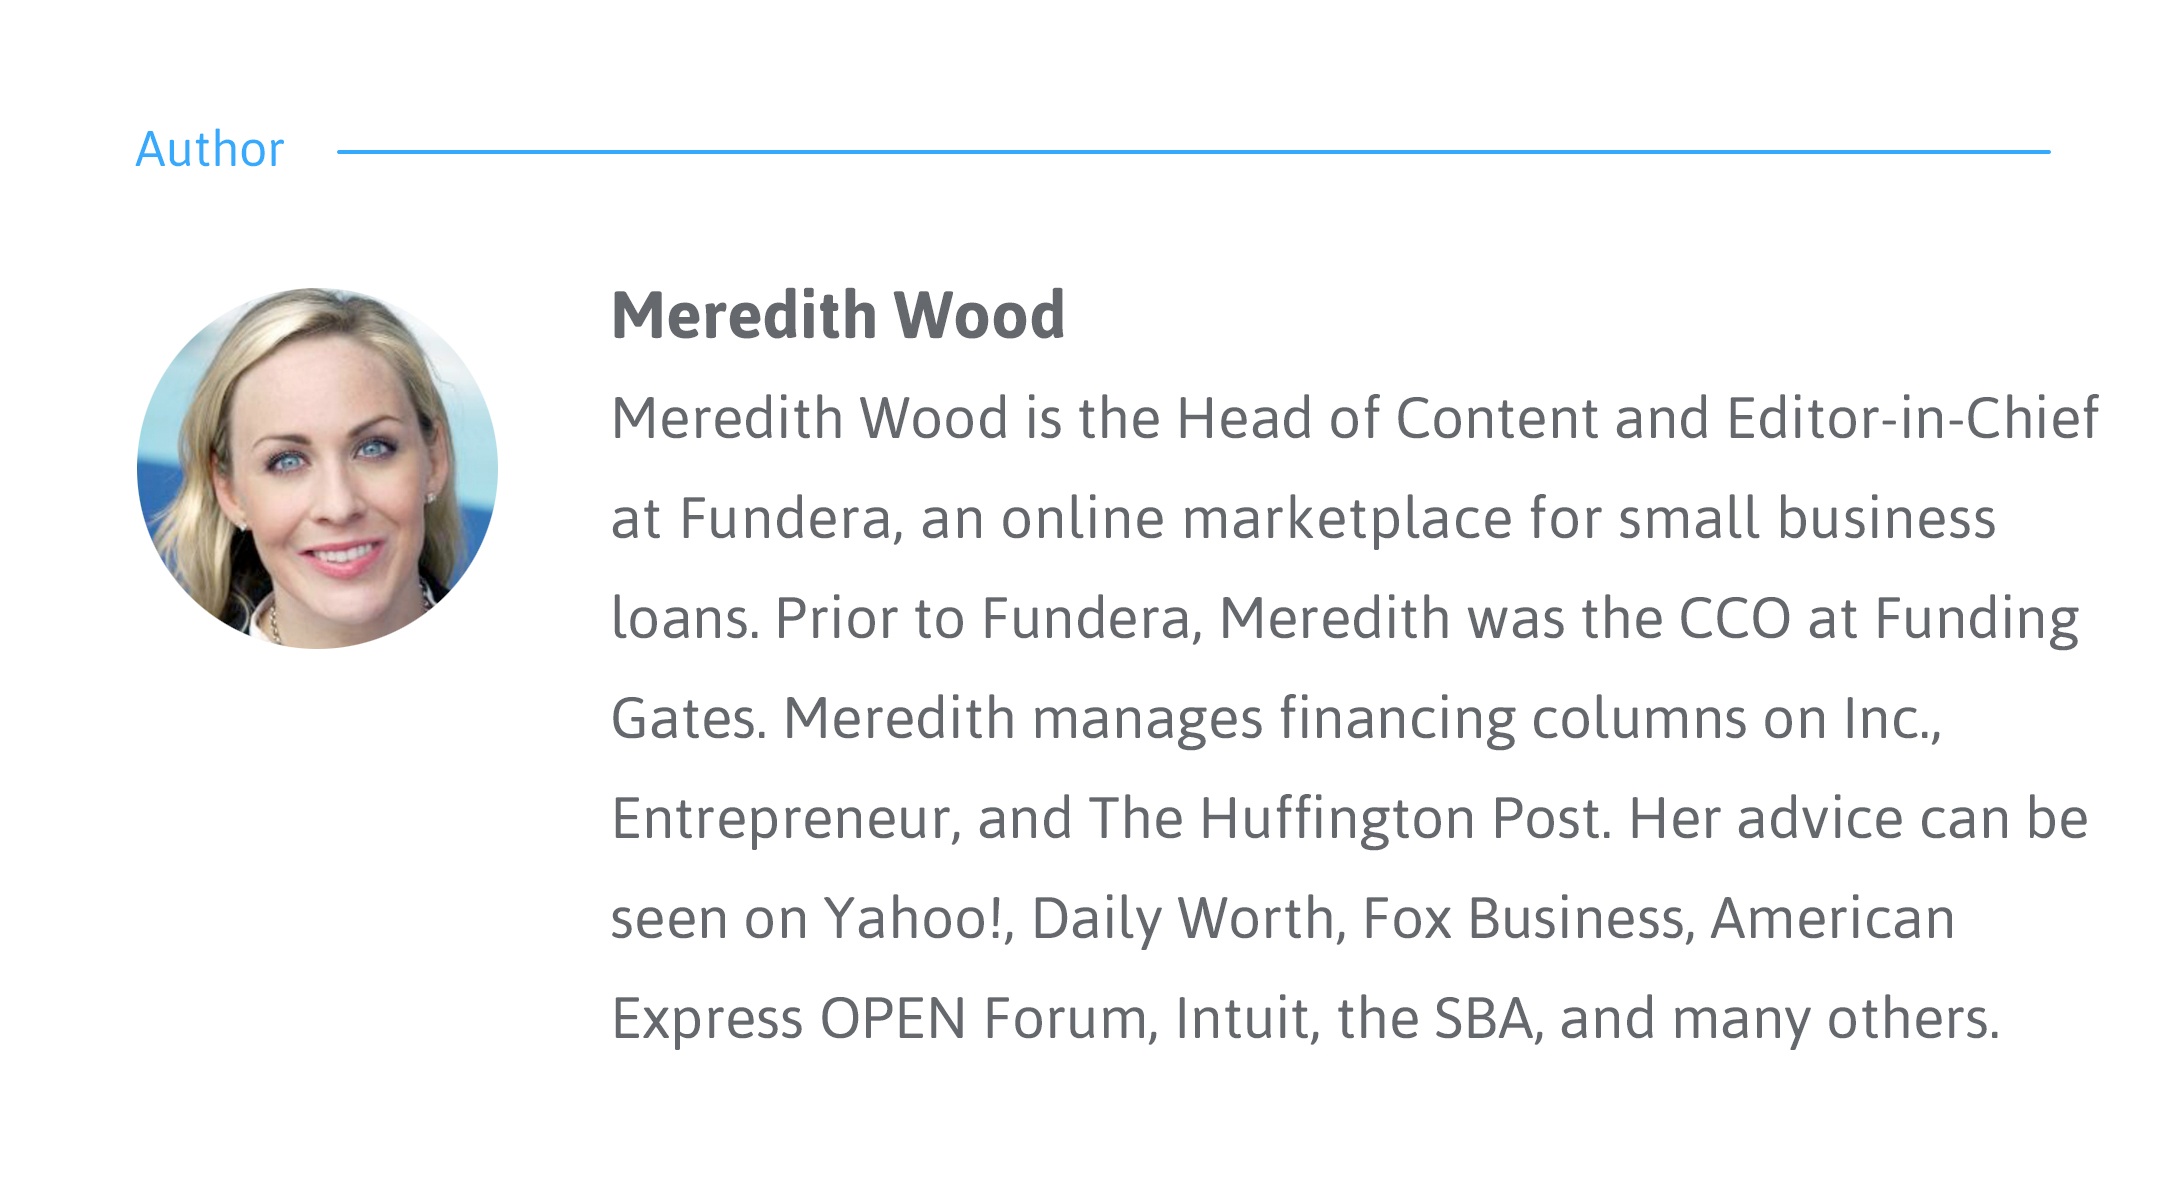 meredith wood